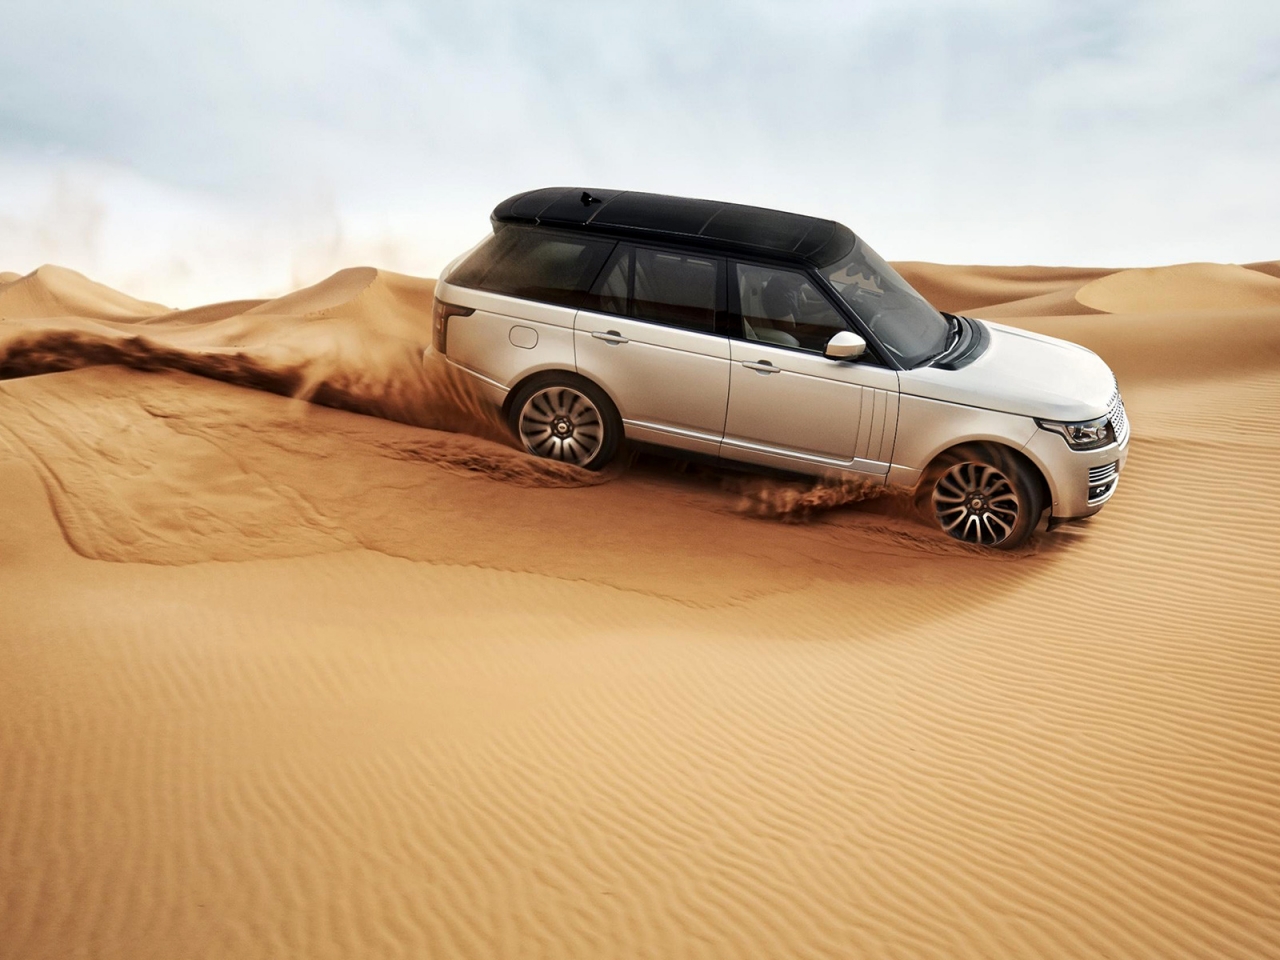 Range Rover in the Desert for 1280 x 960 resolution